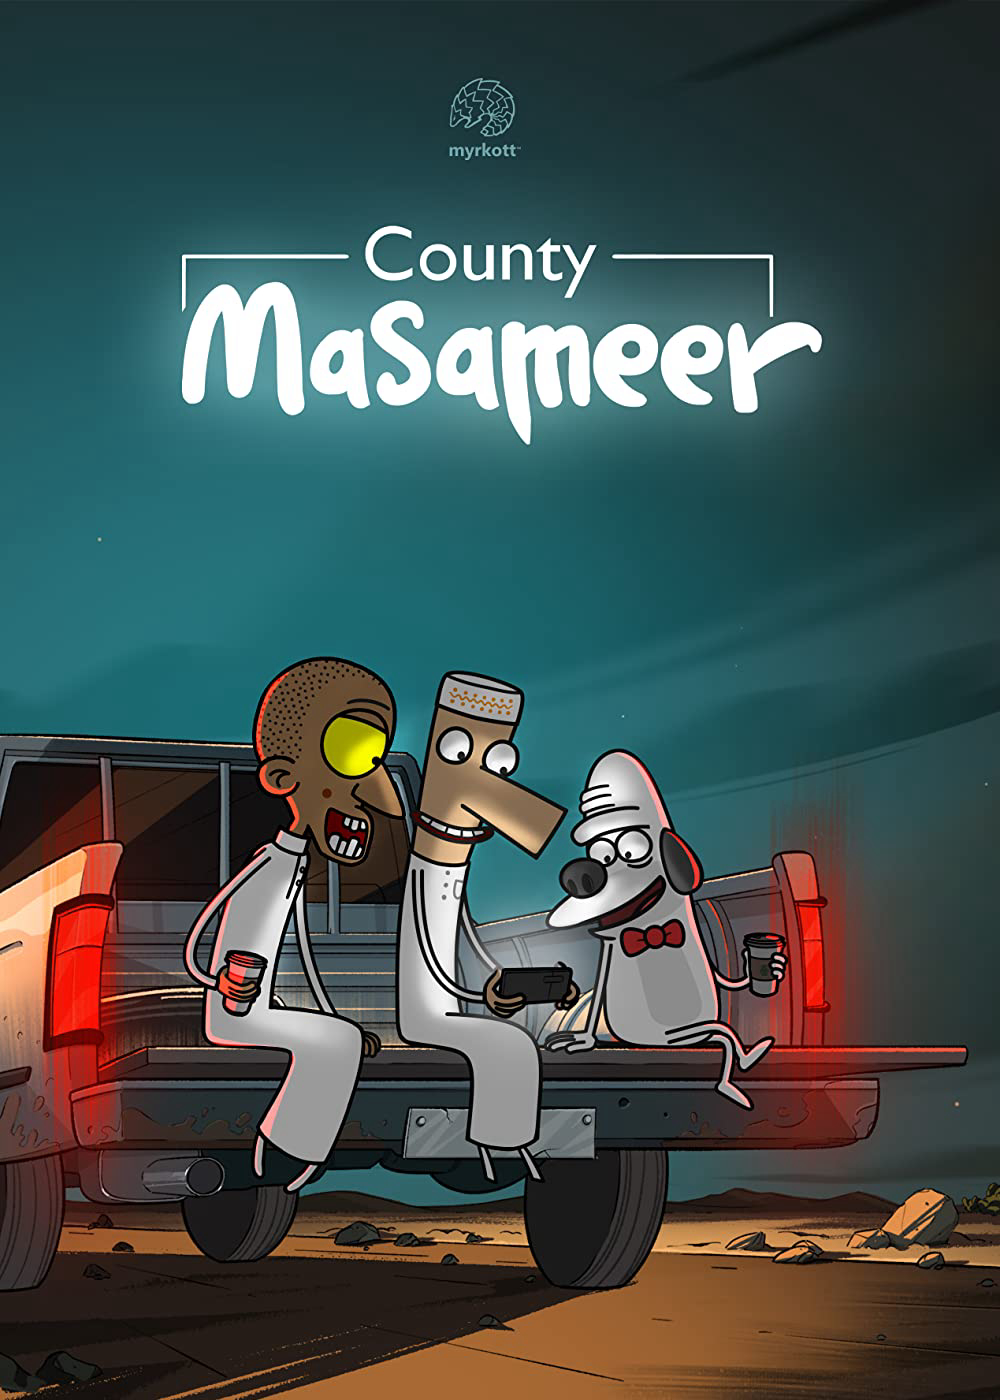 Masameer County (Phần 2) - Masameer County (Season 2)